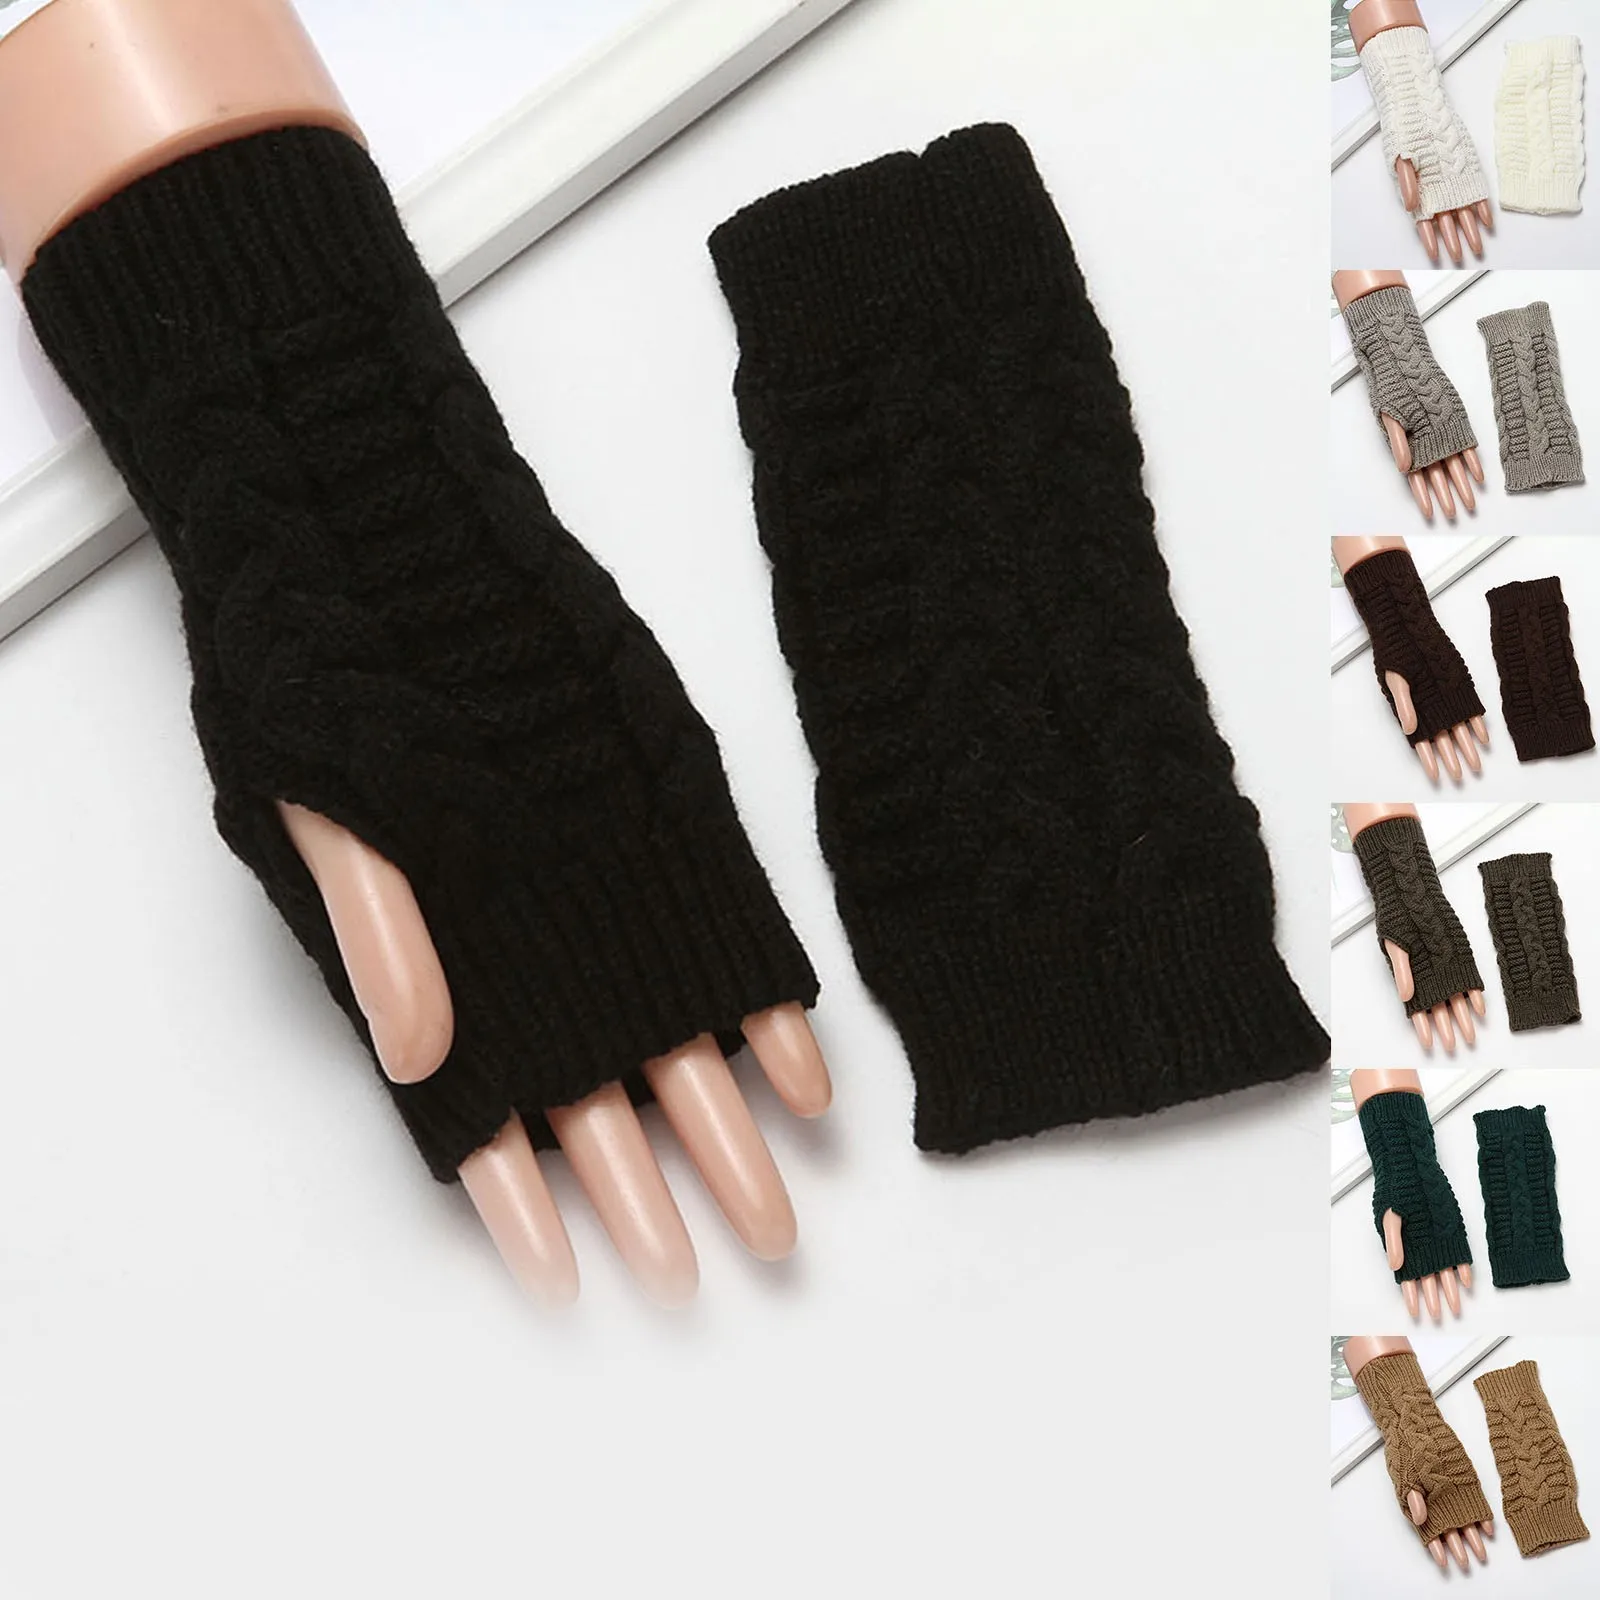 Tanio Pół palca rękawiczki dla kobiet zima miękka